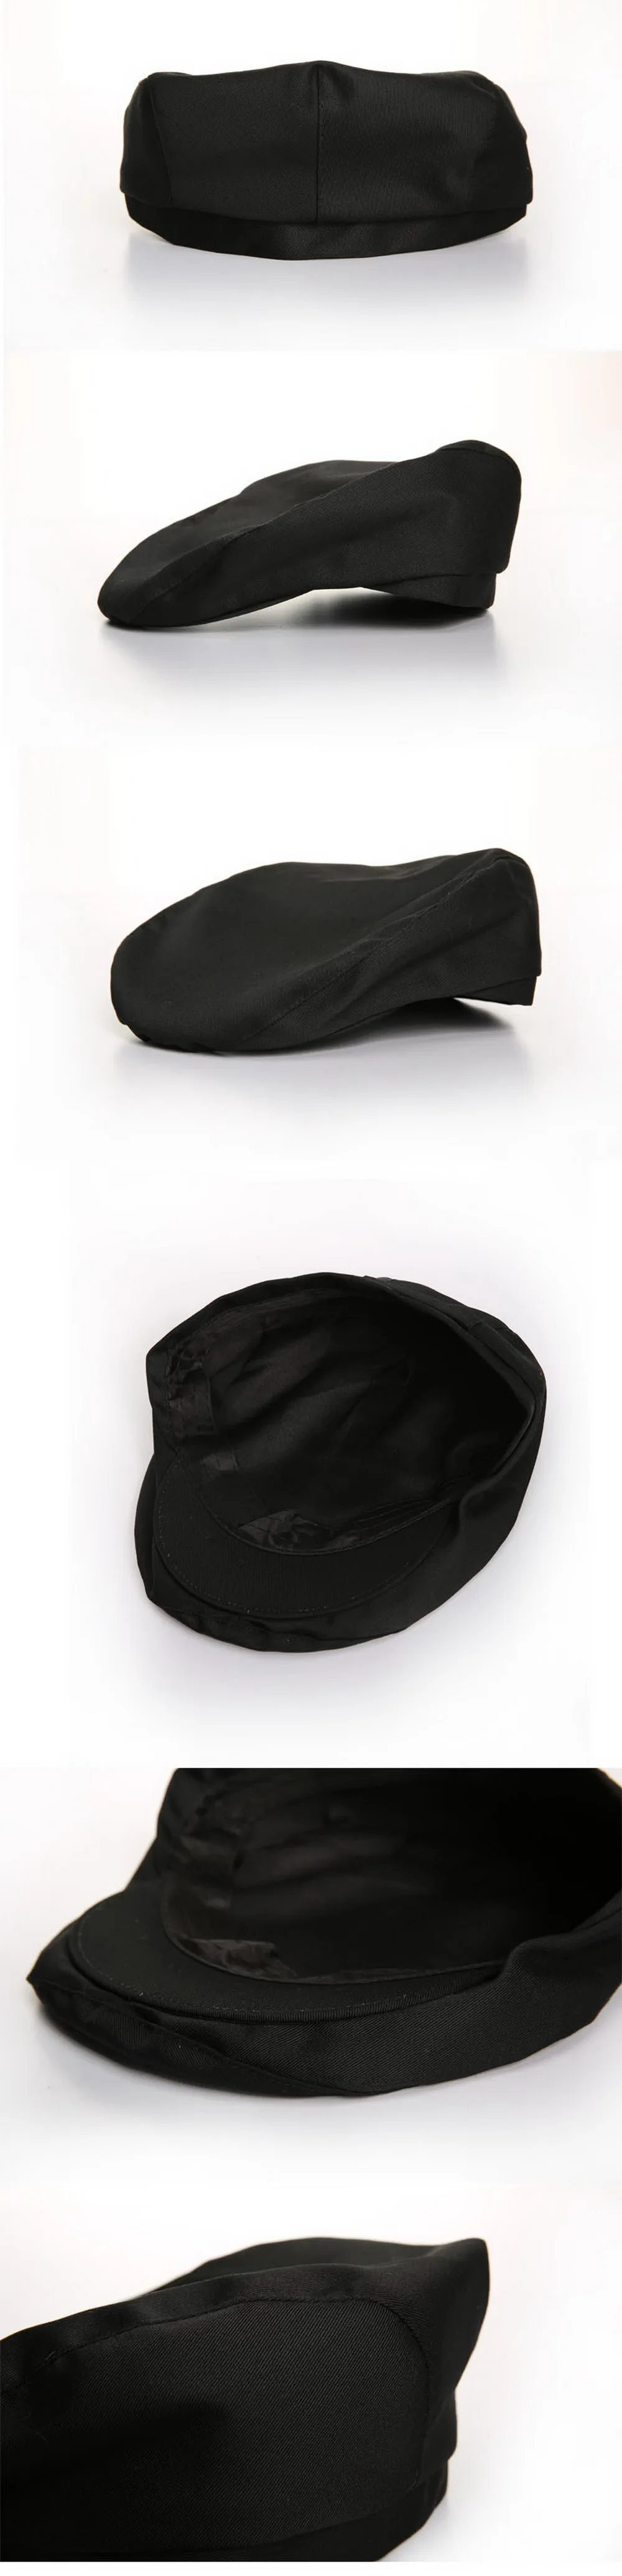 Еда Услуги Chef Hat hotel Форма Ресторан шляпа форма для шеф-повара рабочая одежда шляпа аксессуары в полоску повар шляпу высокого качества